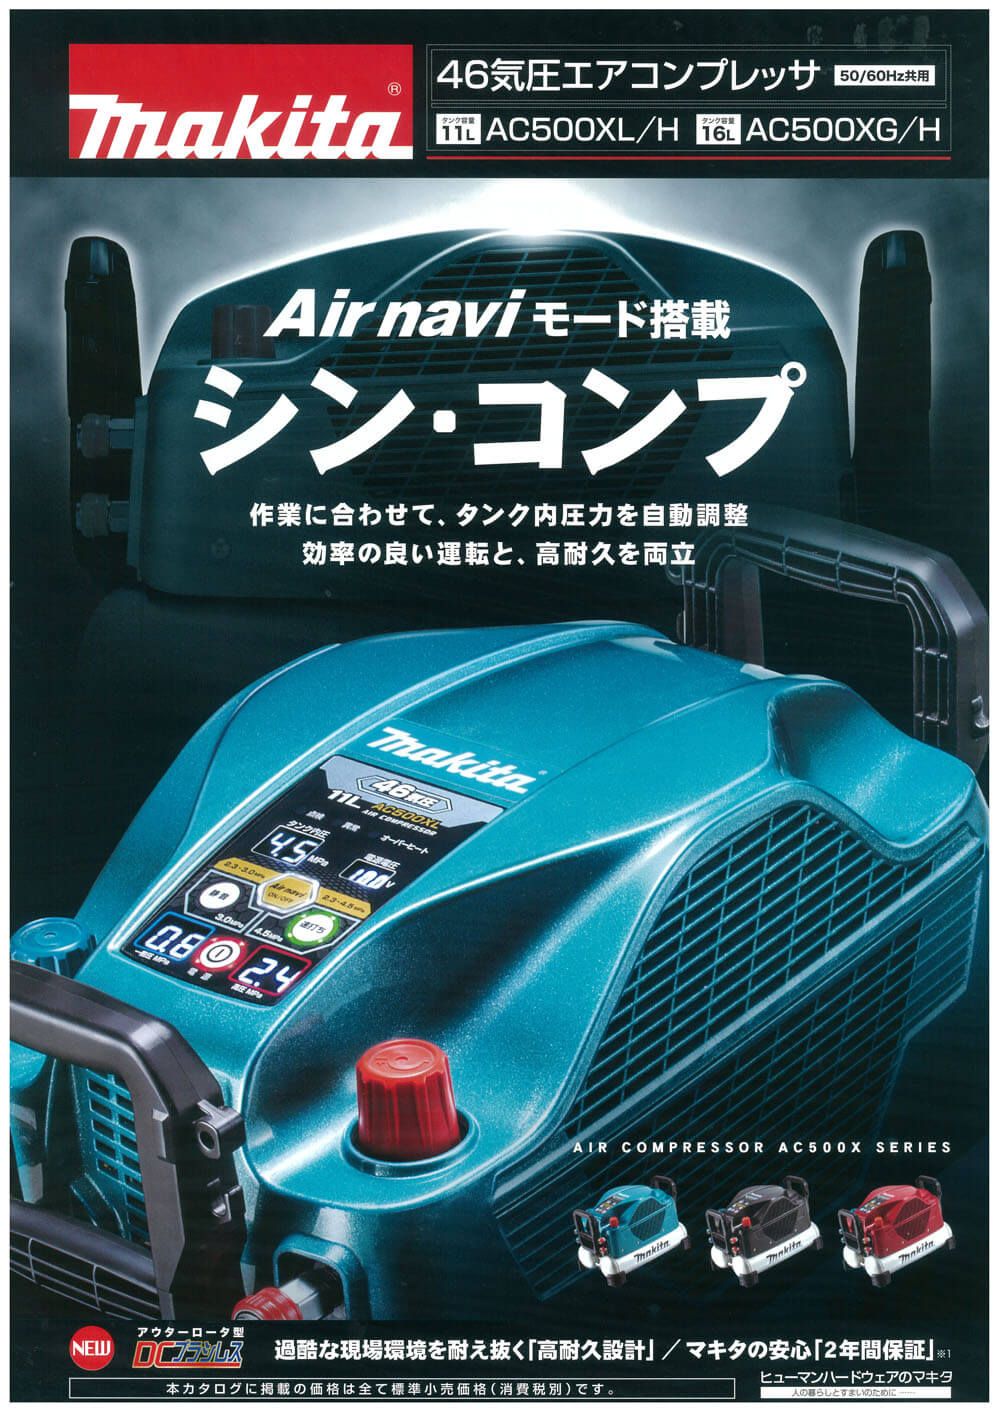 マキタ AC500XL エアコンプレッサ(50/60Hz共用) ウエダ金物【公式サイト】